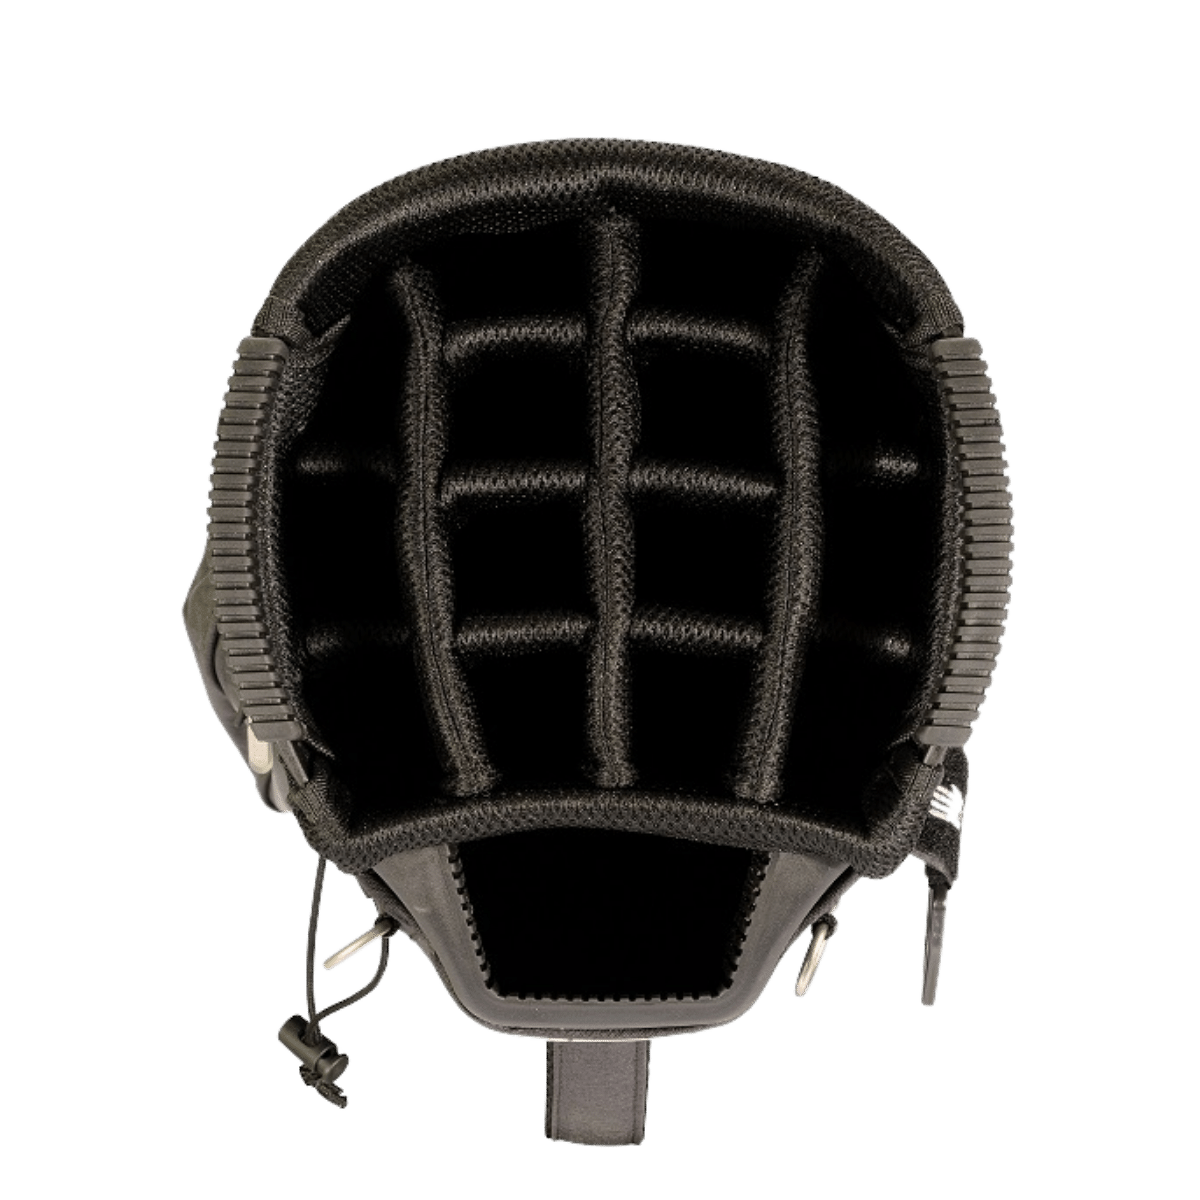 Cartbag FO14 Premium Waterproof